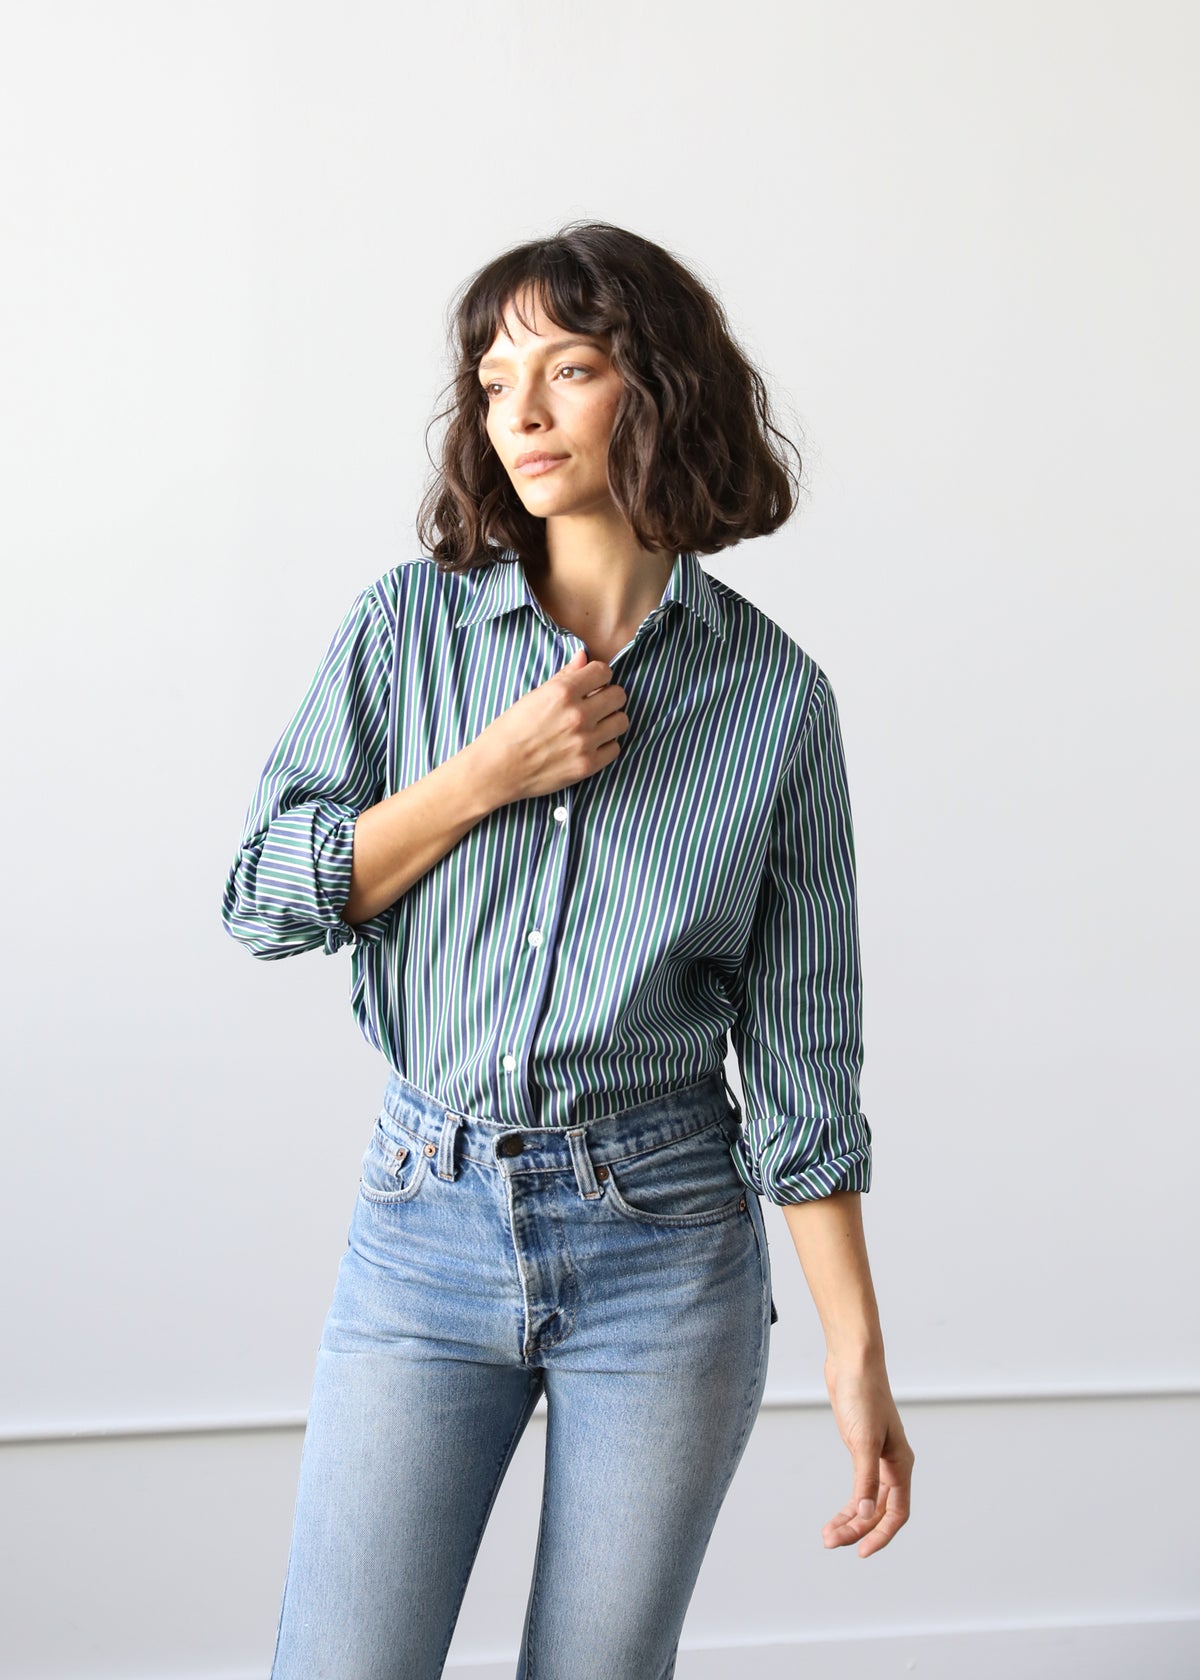 Gemma Button Up Shirt in Pine Stripe Cotton Poplin